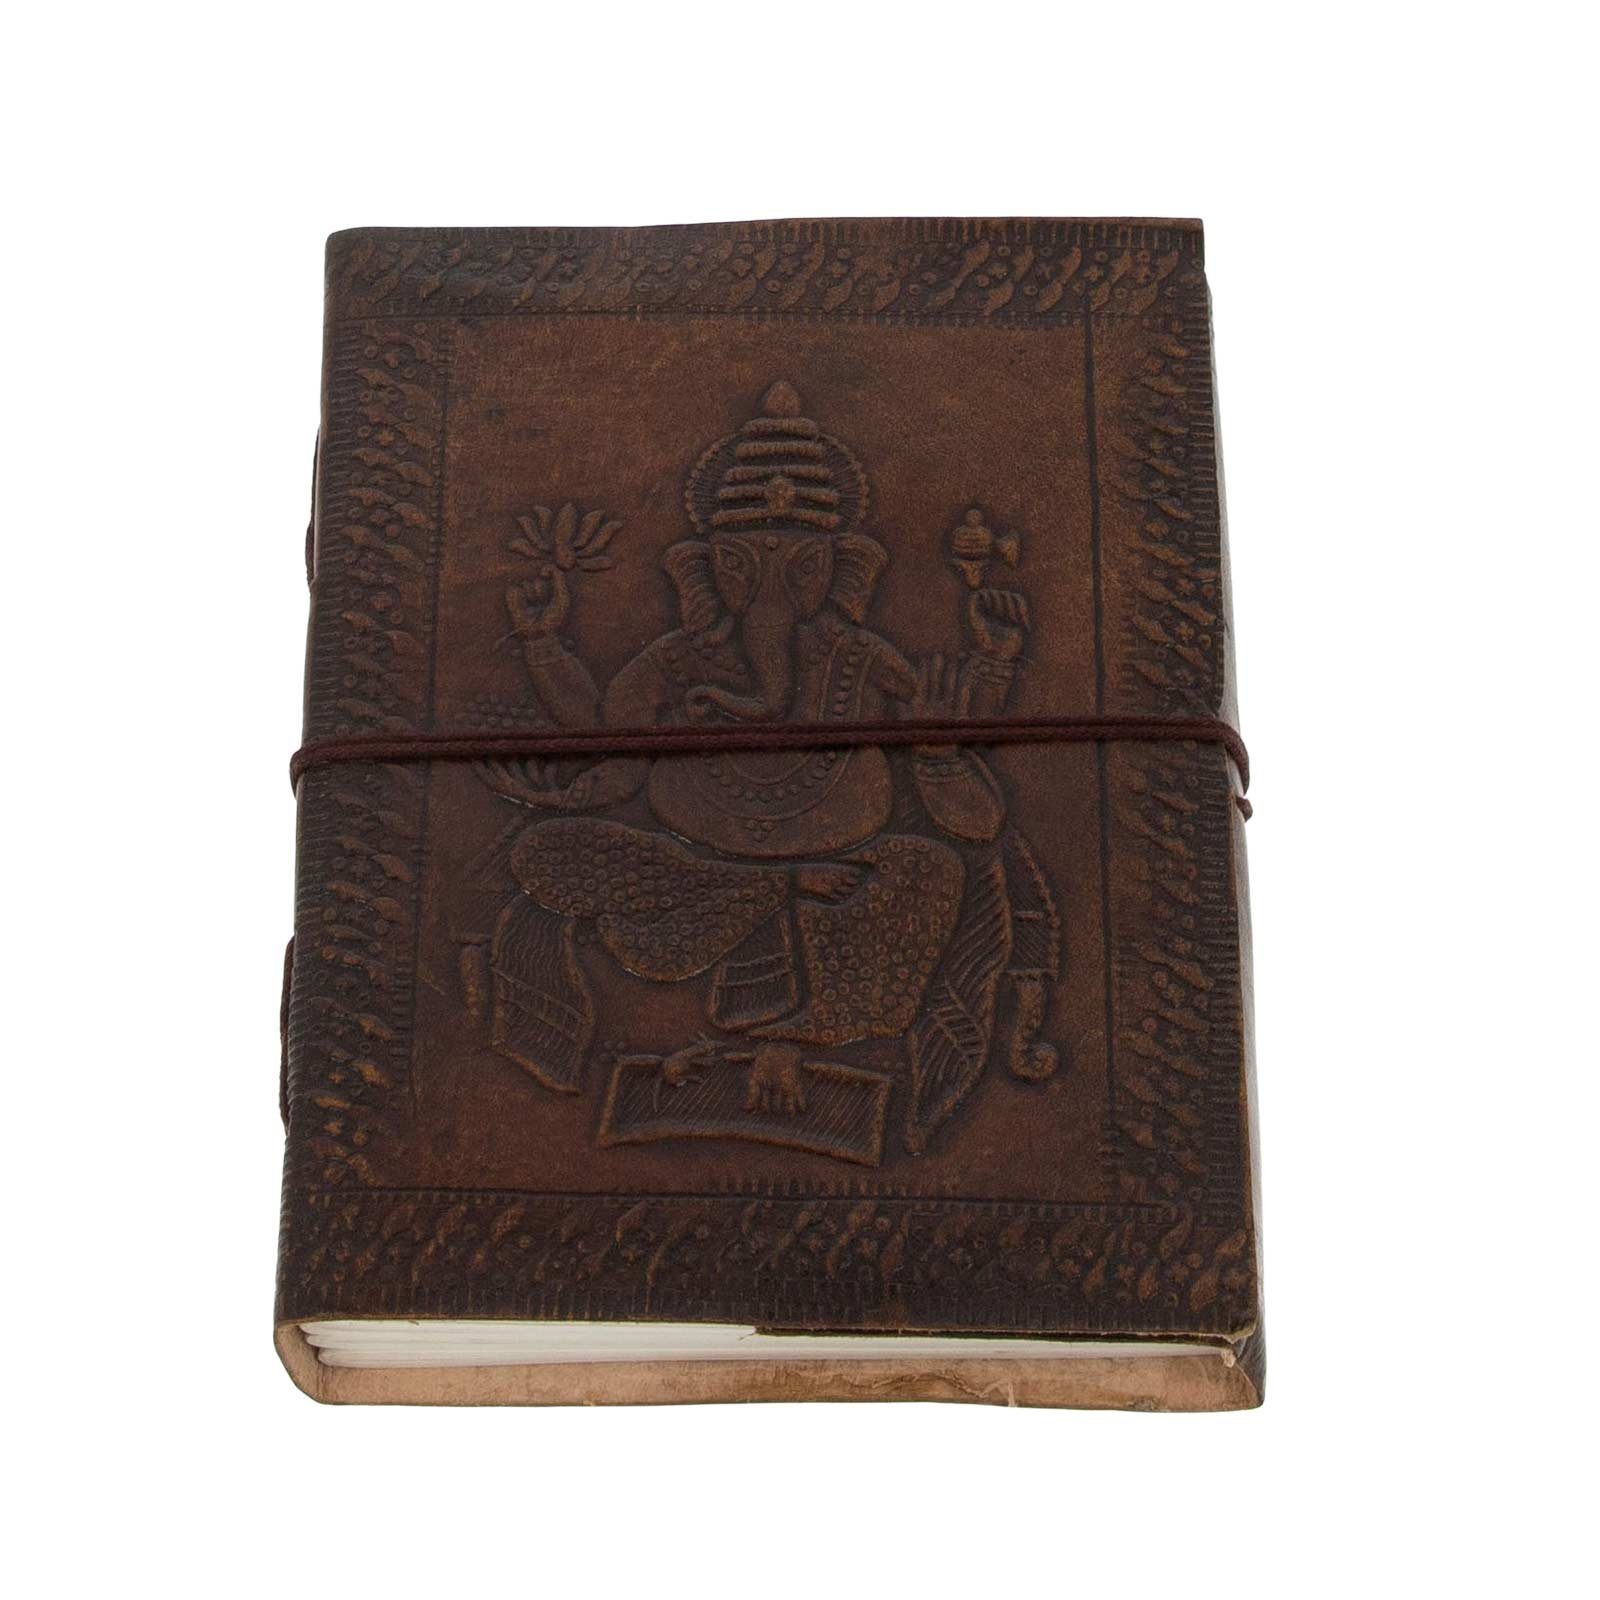 KUNST UND MAGIE Lord Ganesha Tagebuch Notizbuch Tagebuch handgefertigt-geprägtes Leder 18x13cm